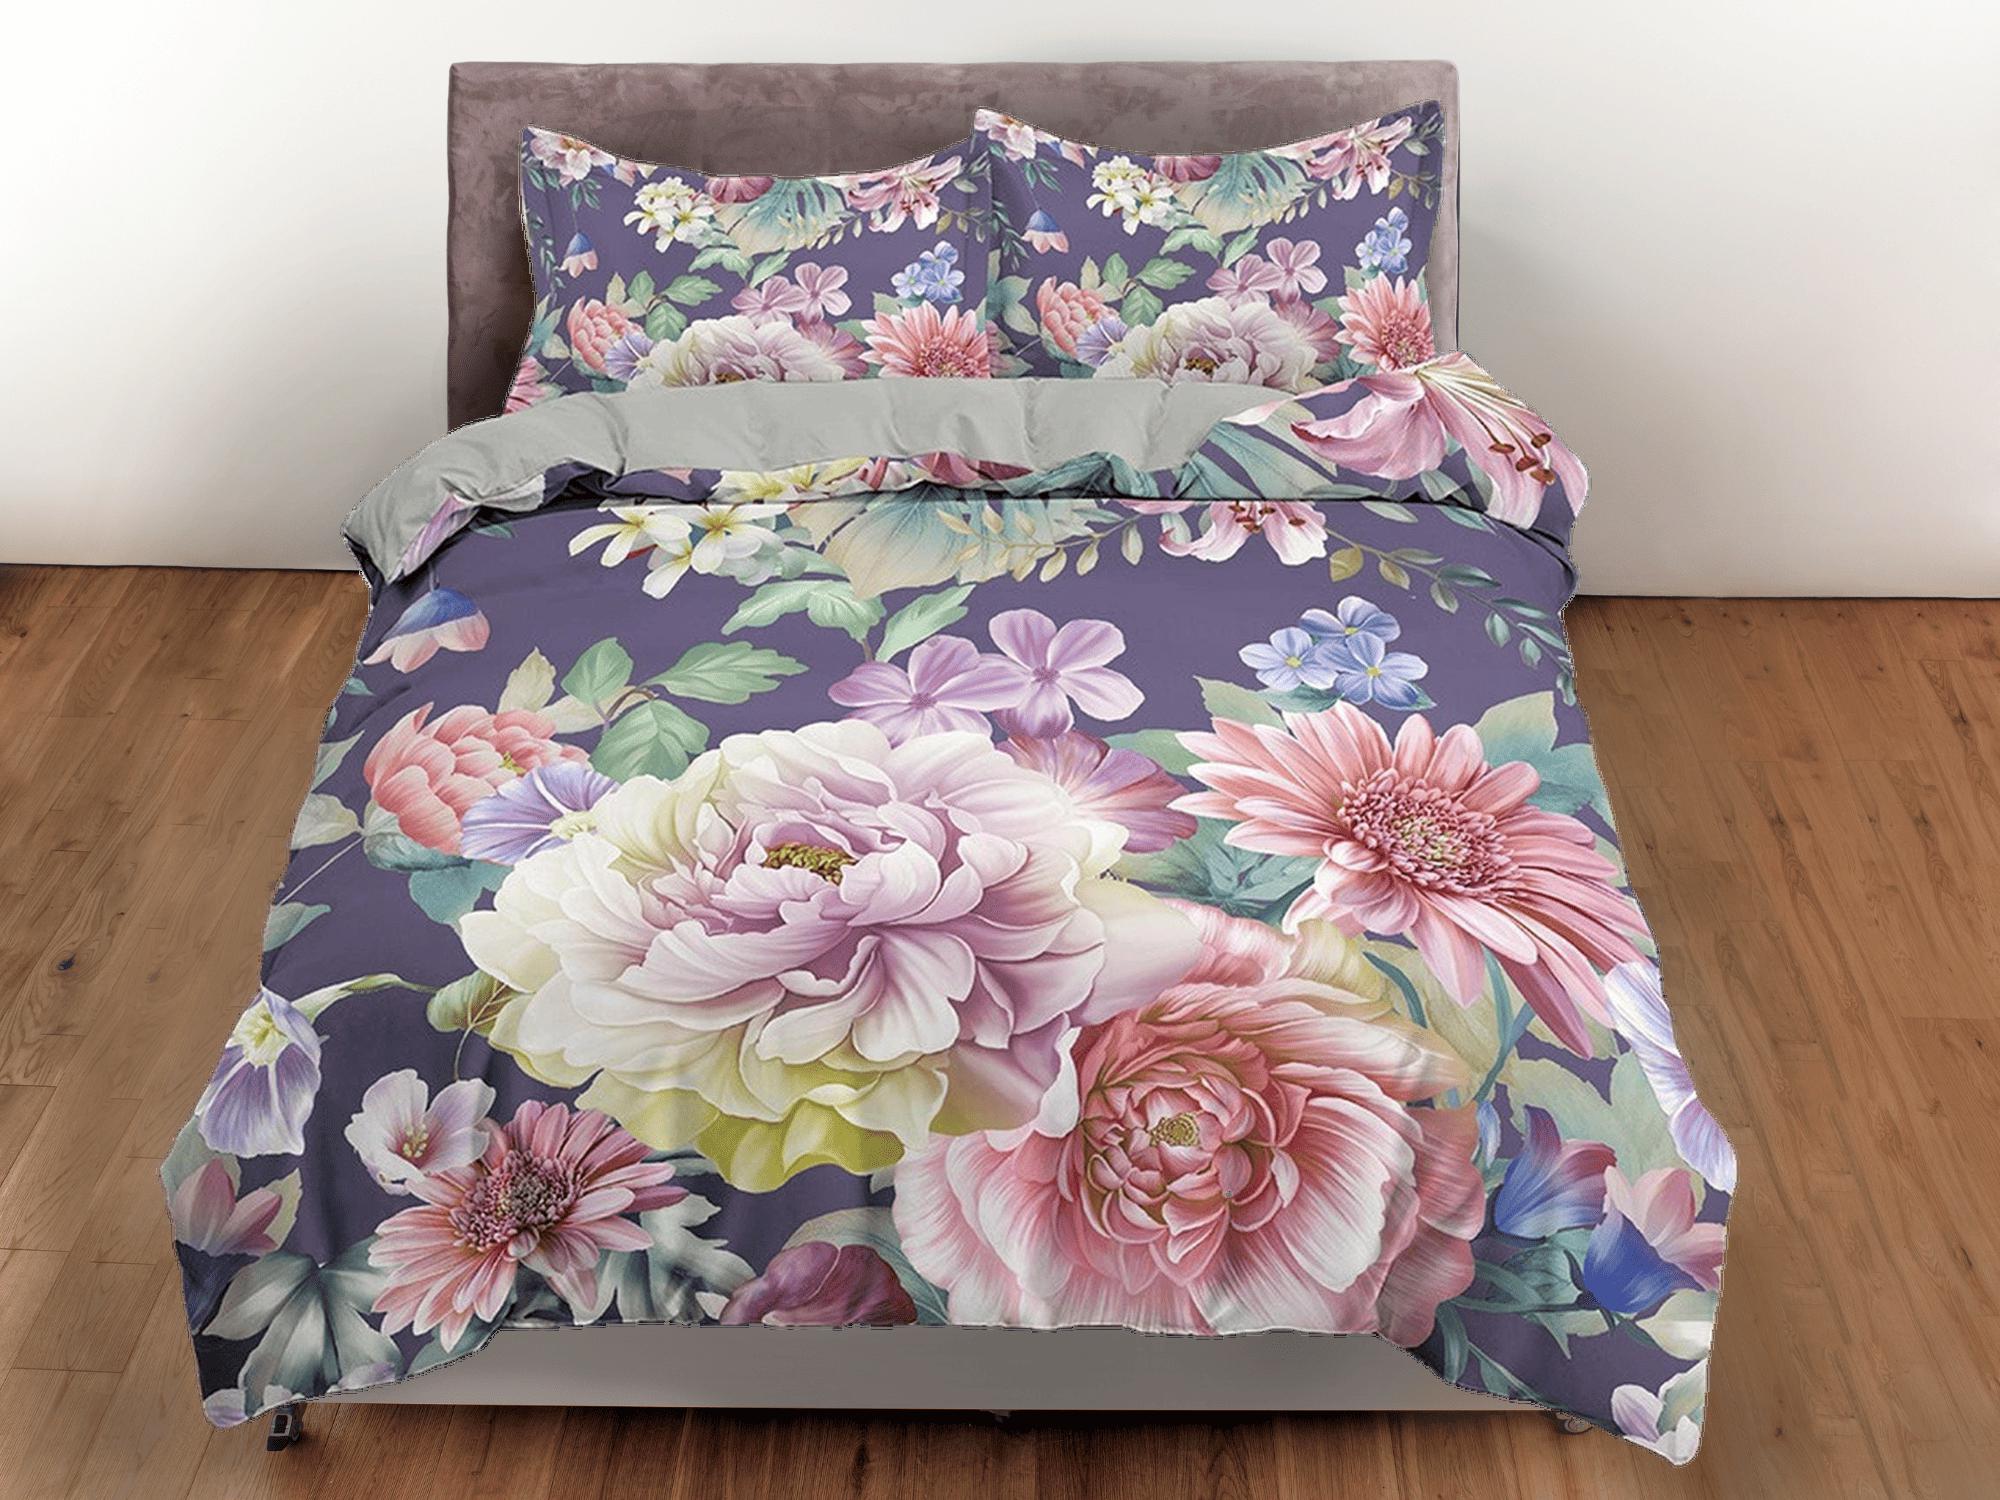 daintyduvet Pink floral bedding, purple duvet cover queen, king, boho duvet, designer bedding, aesthetic bedding, maximalist shabby chic bedding full